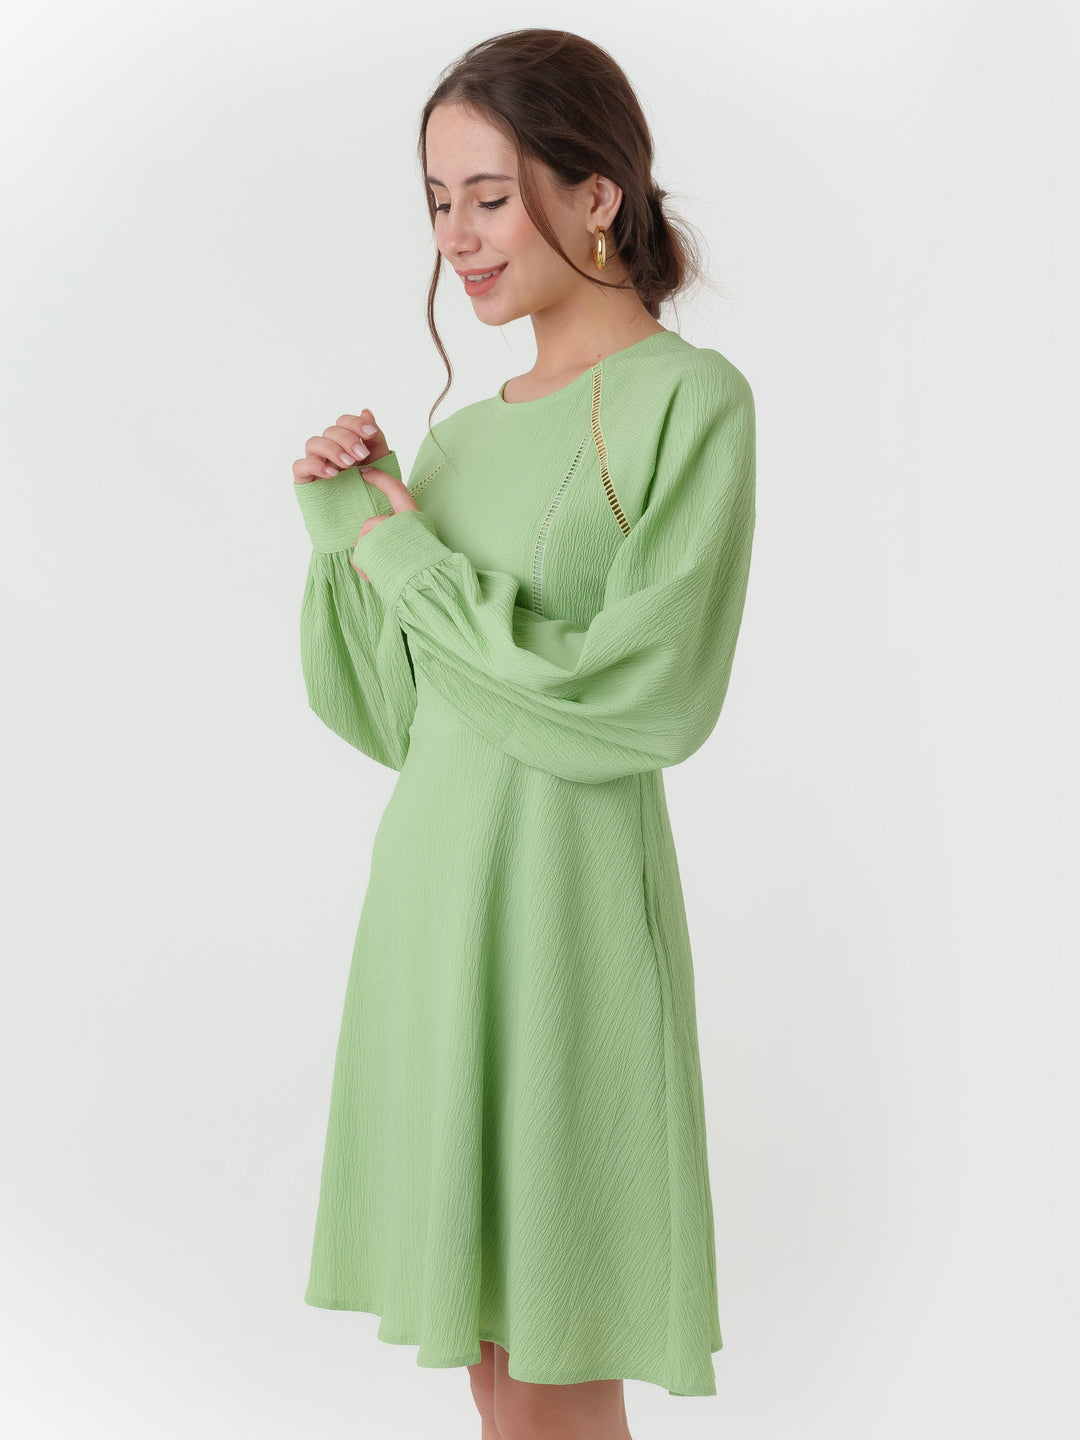 Green_Textured_Regular_Short_Dress_3